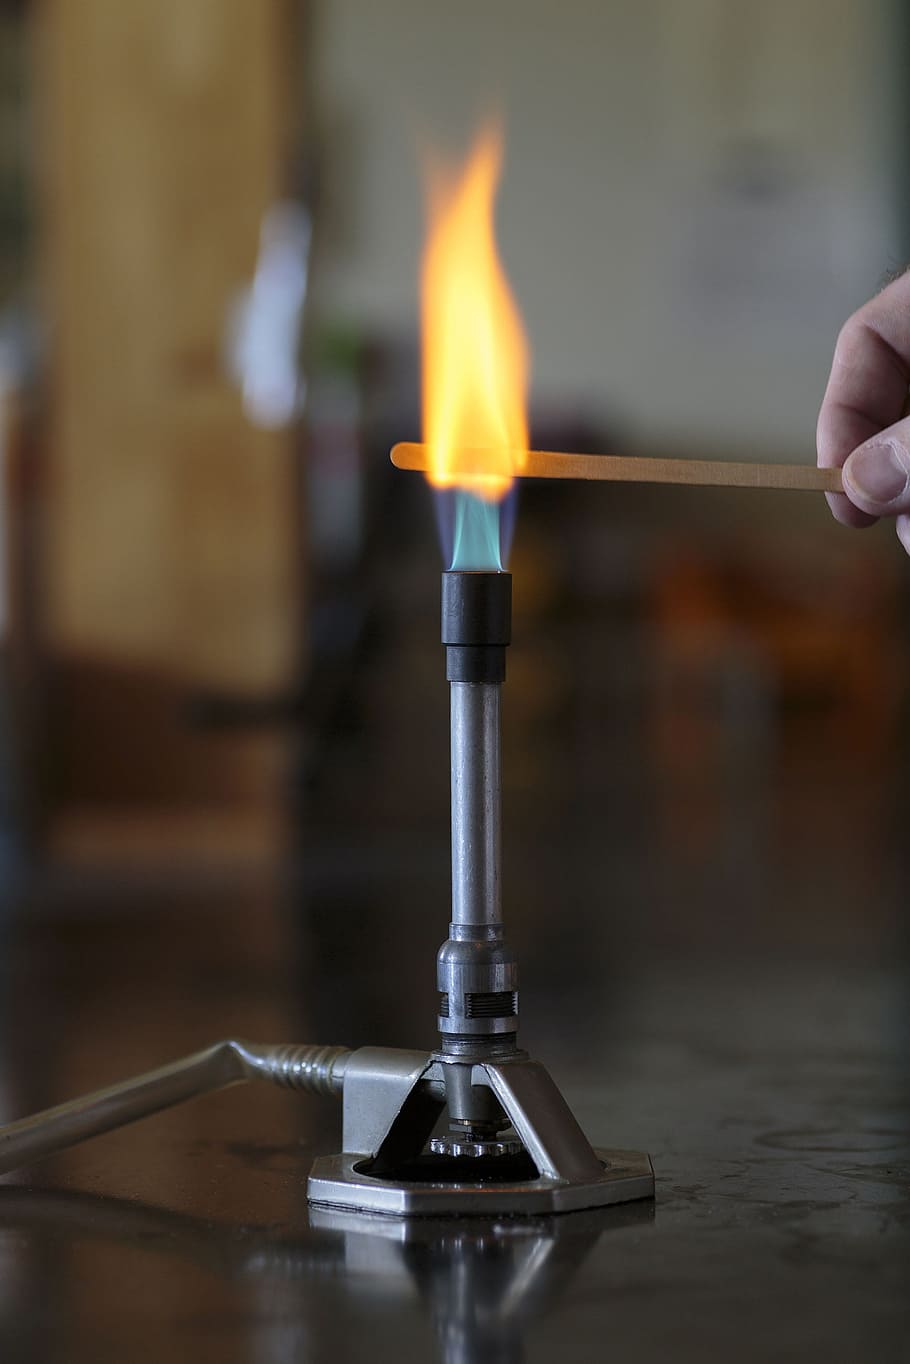 solução de sódio, ardente, de madeira, tala, chama do queimador de bunsen, chama., química, chama, metais, sais